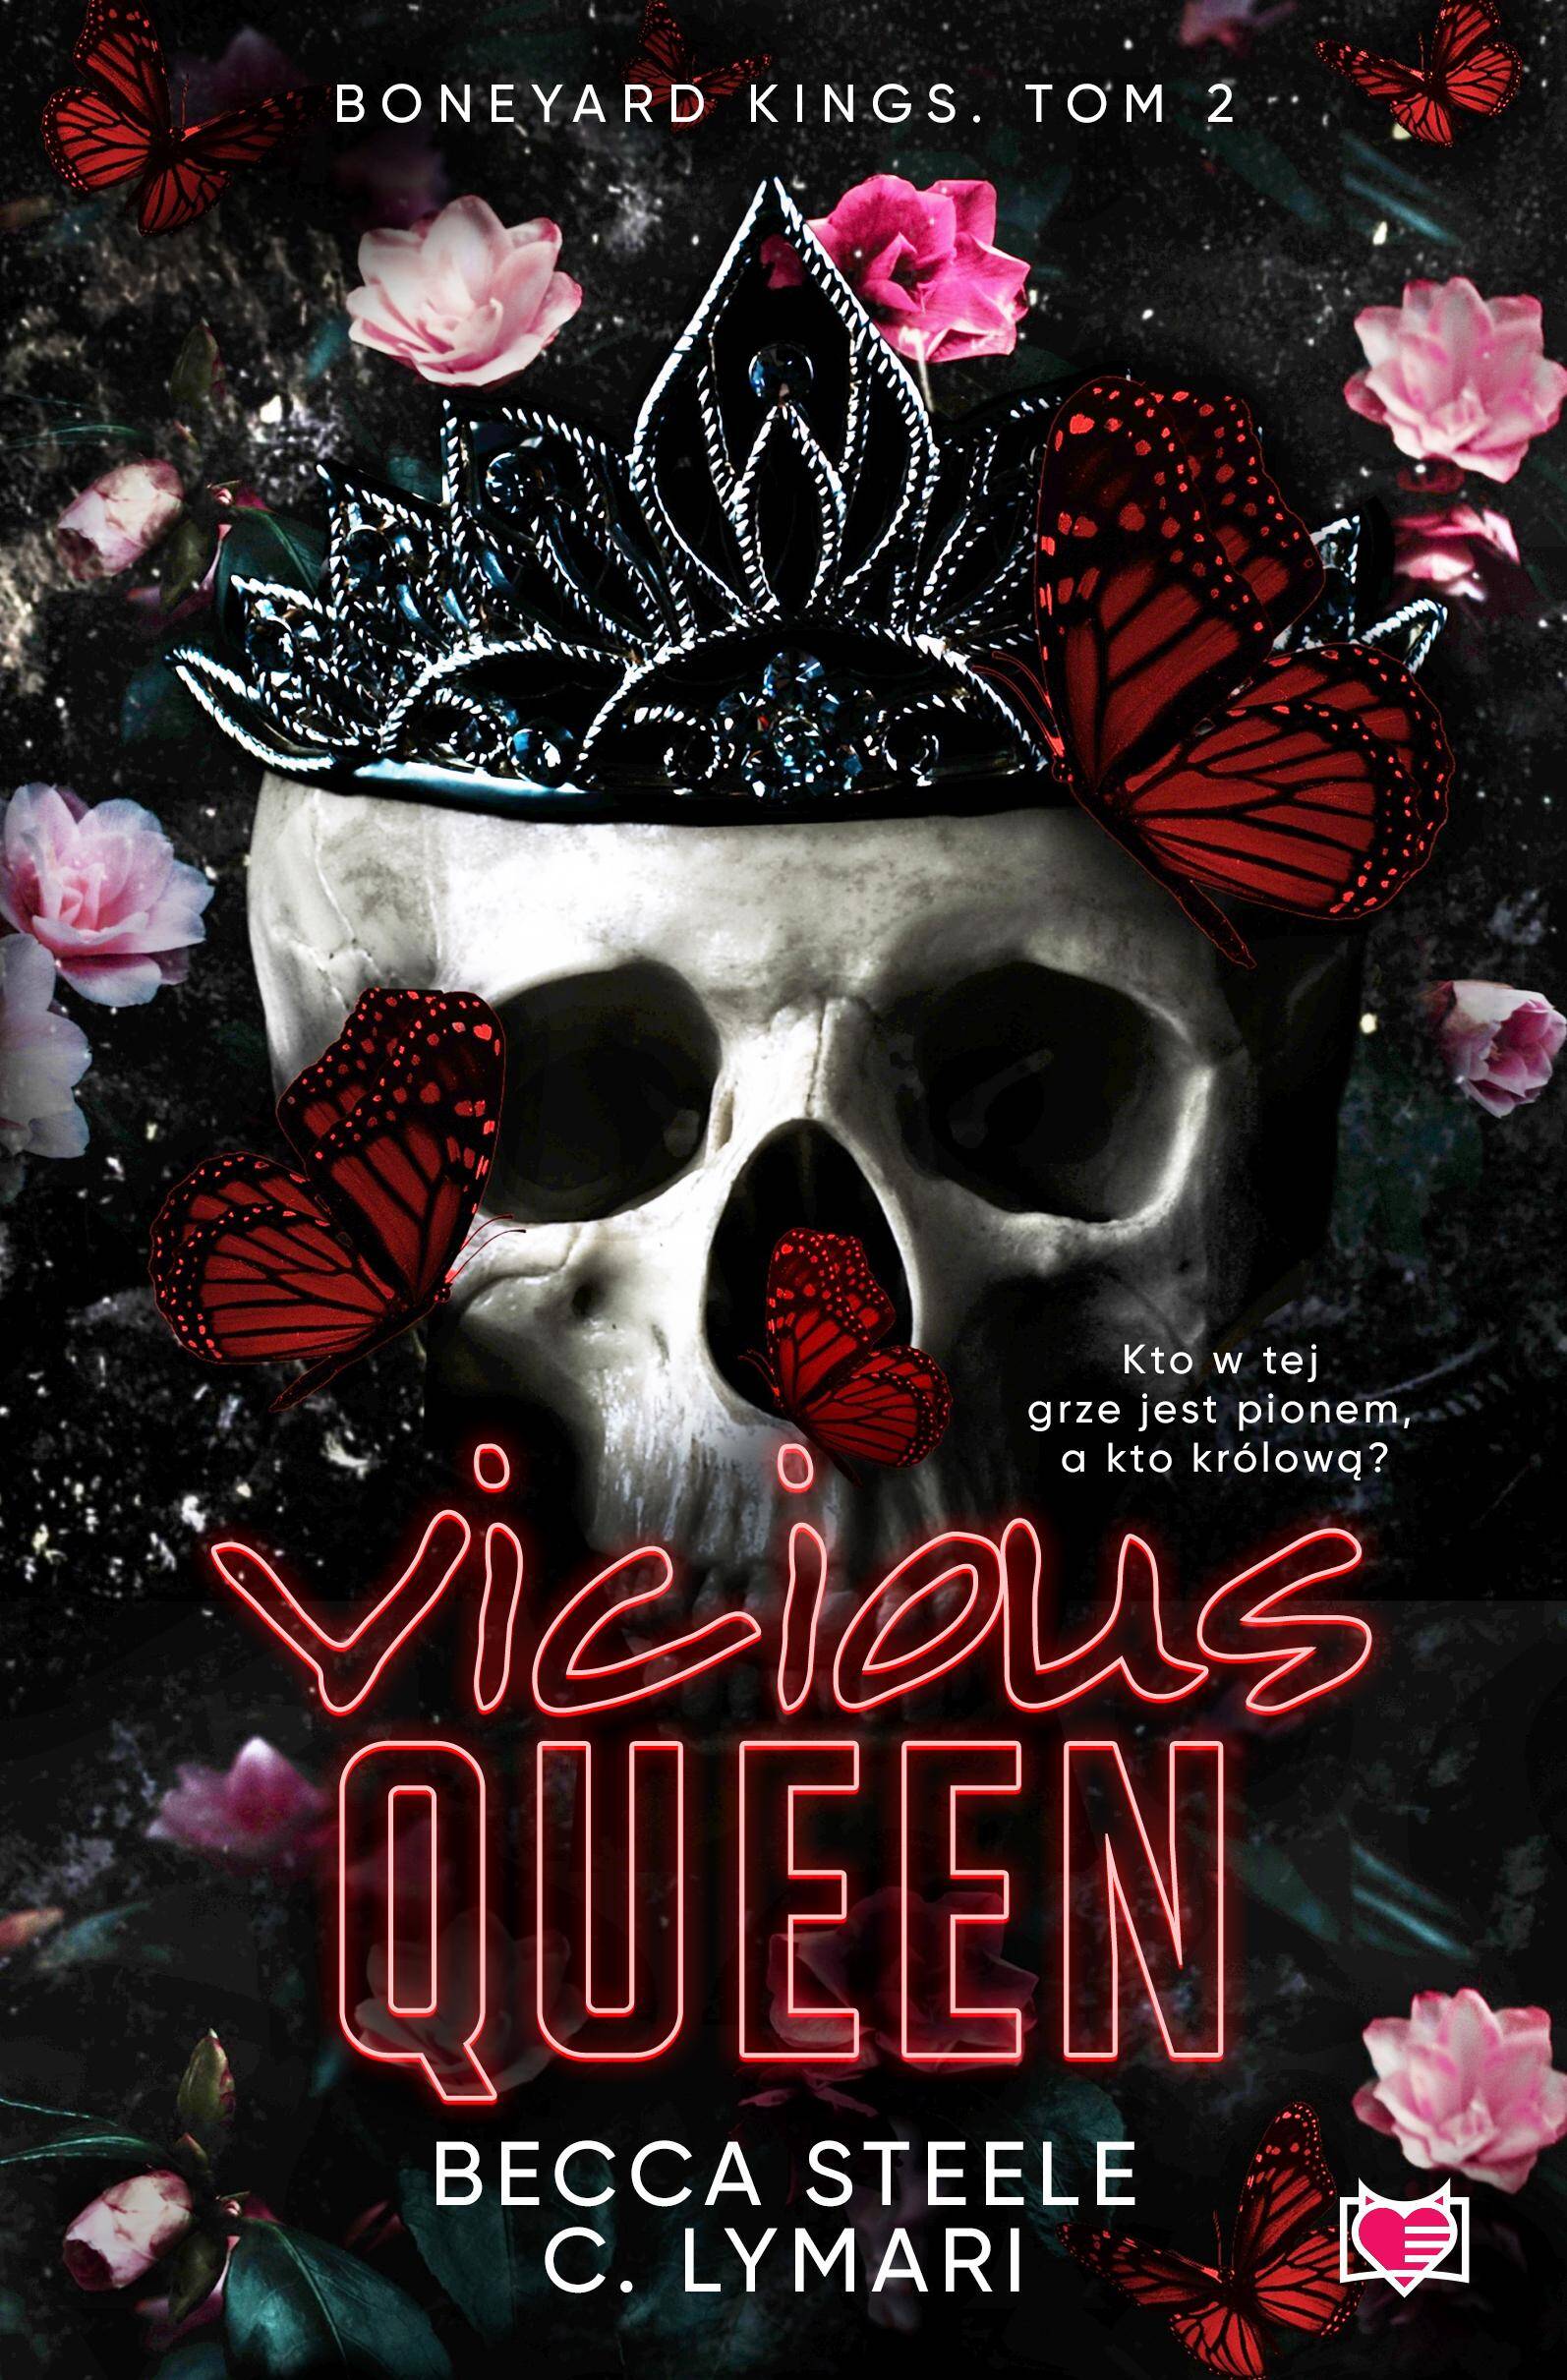 Vicious Queen. Boneyard Kings. Tom 2